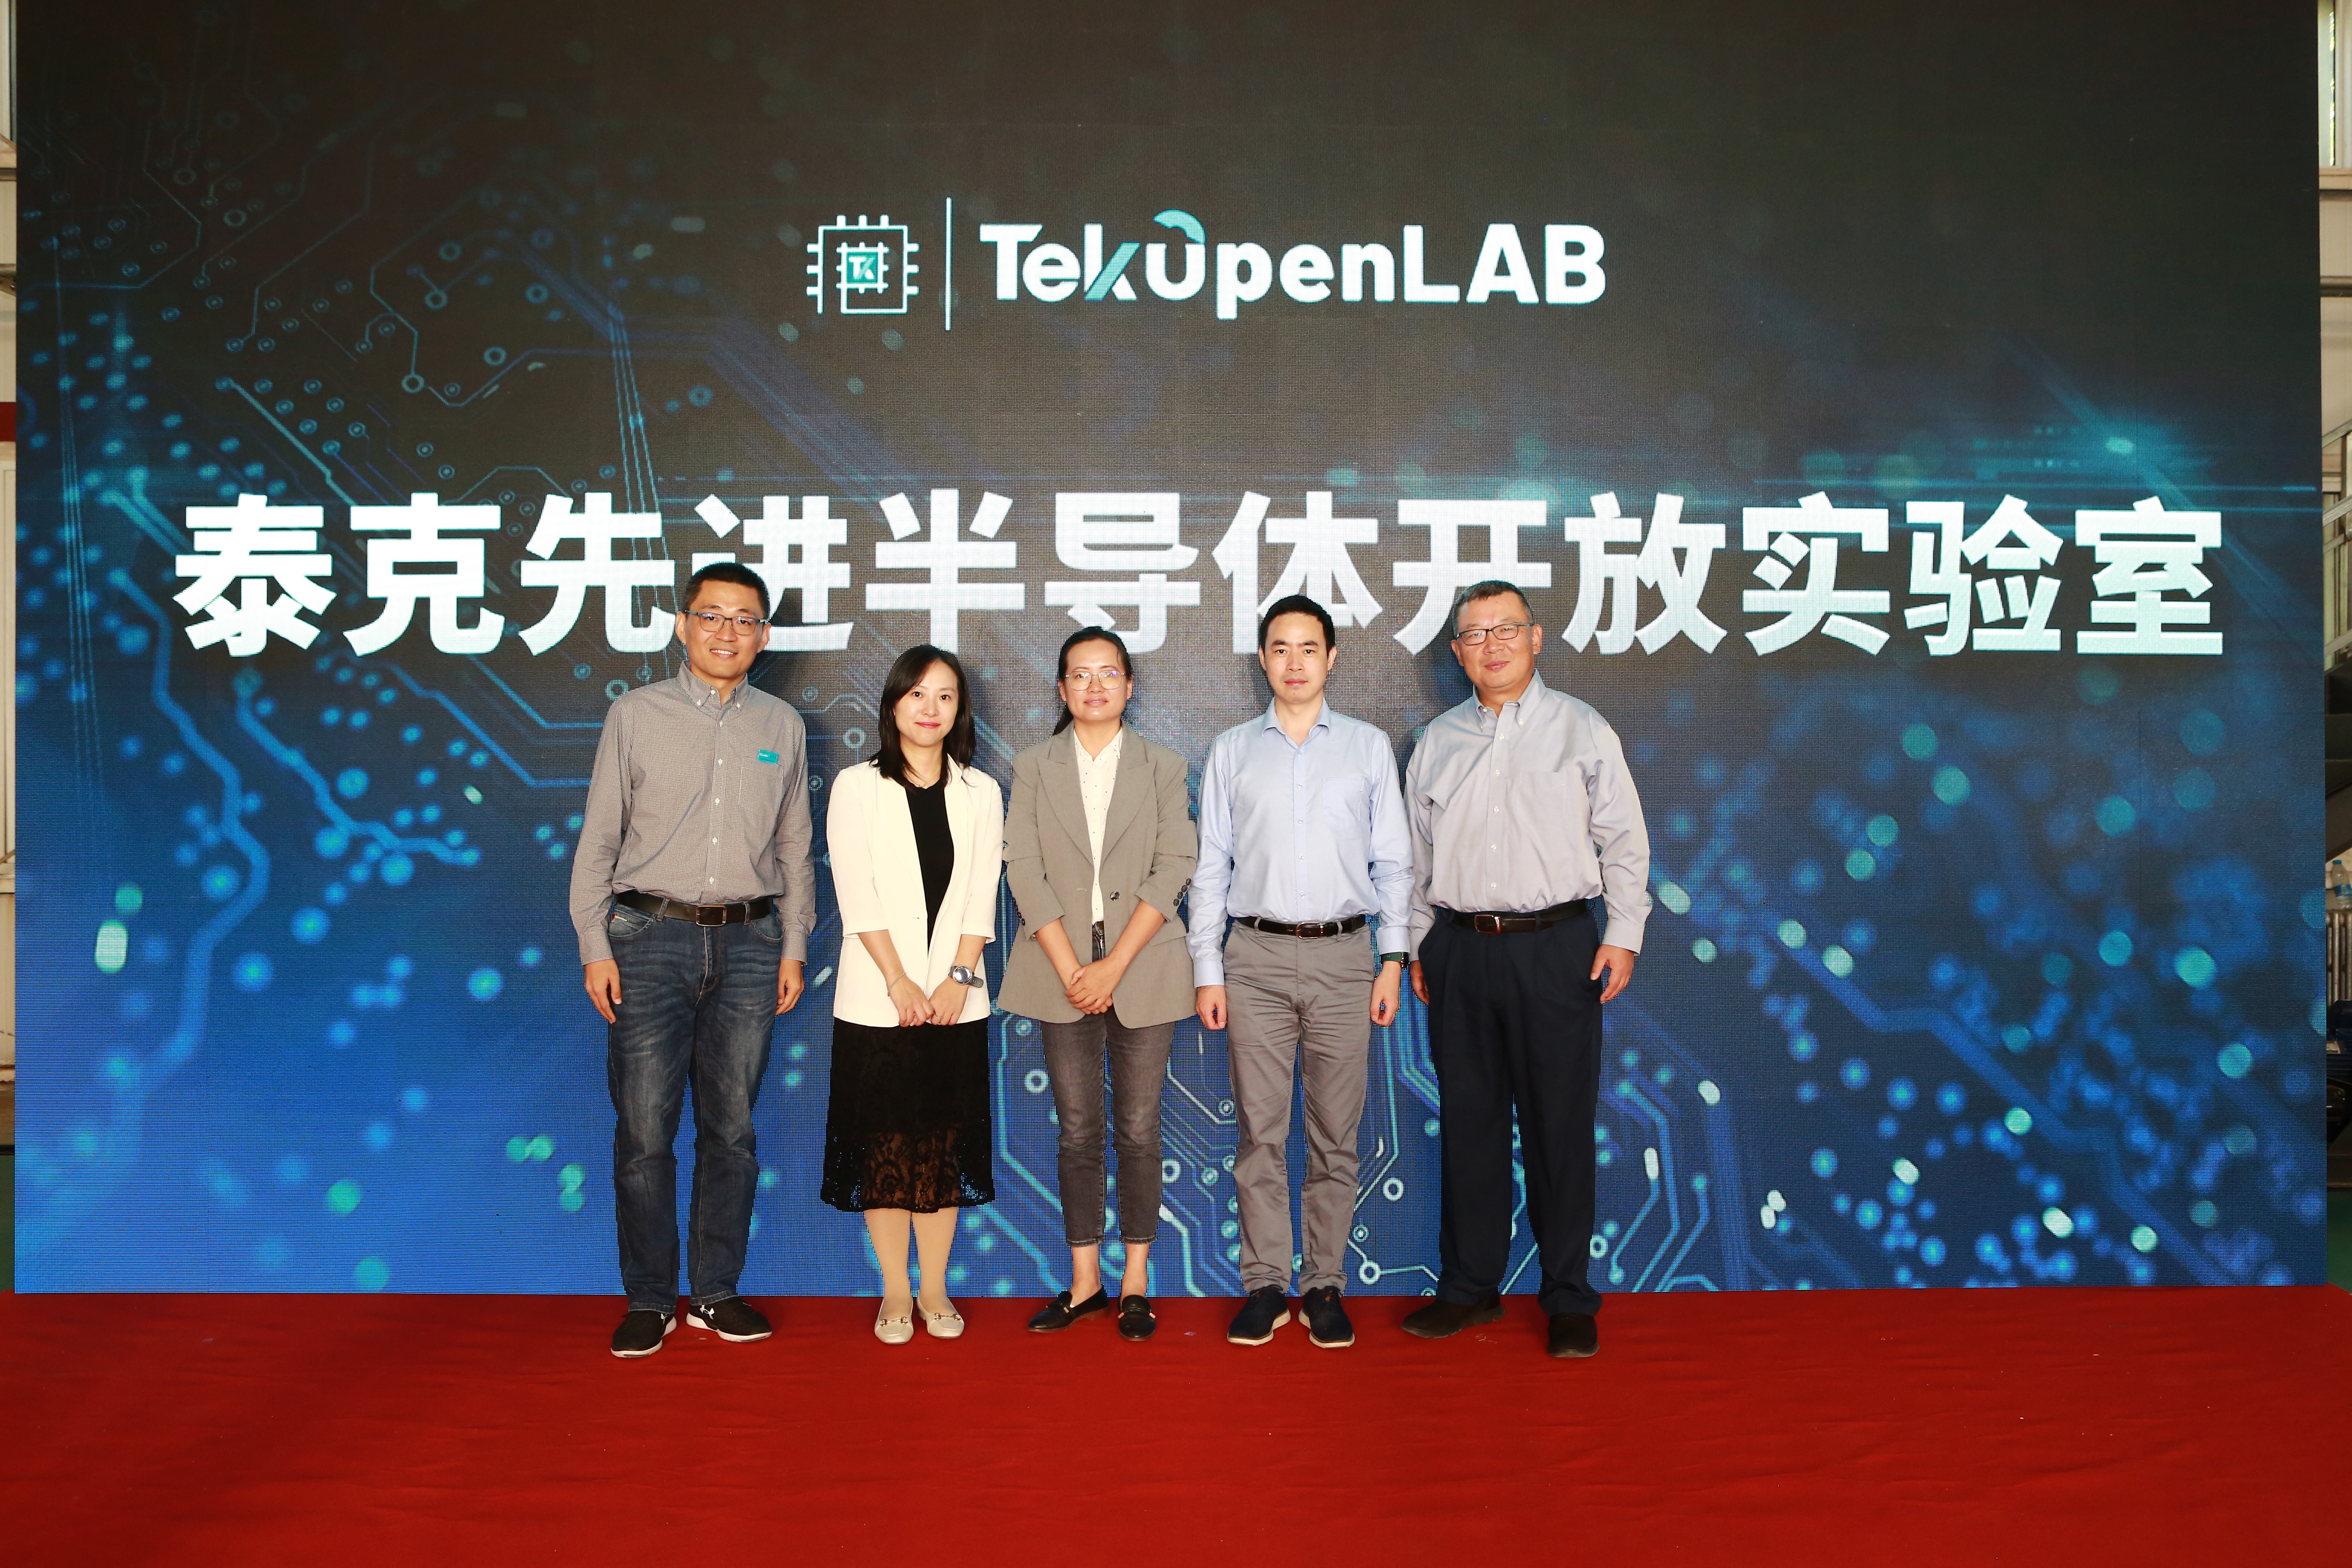 泰克先进半导体开放实验室在北京盛情开幕，提供一站式、全方位测试服务 这是全国首个企业级第三代半导体,pYYBAGMxBW2AYaLmAFdsV1lgDRA652.jpg,第2张